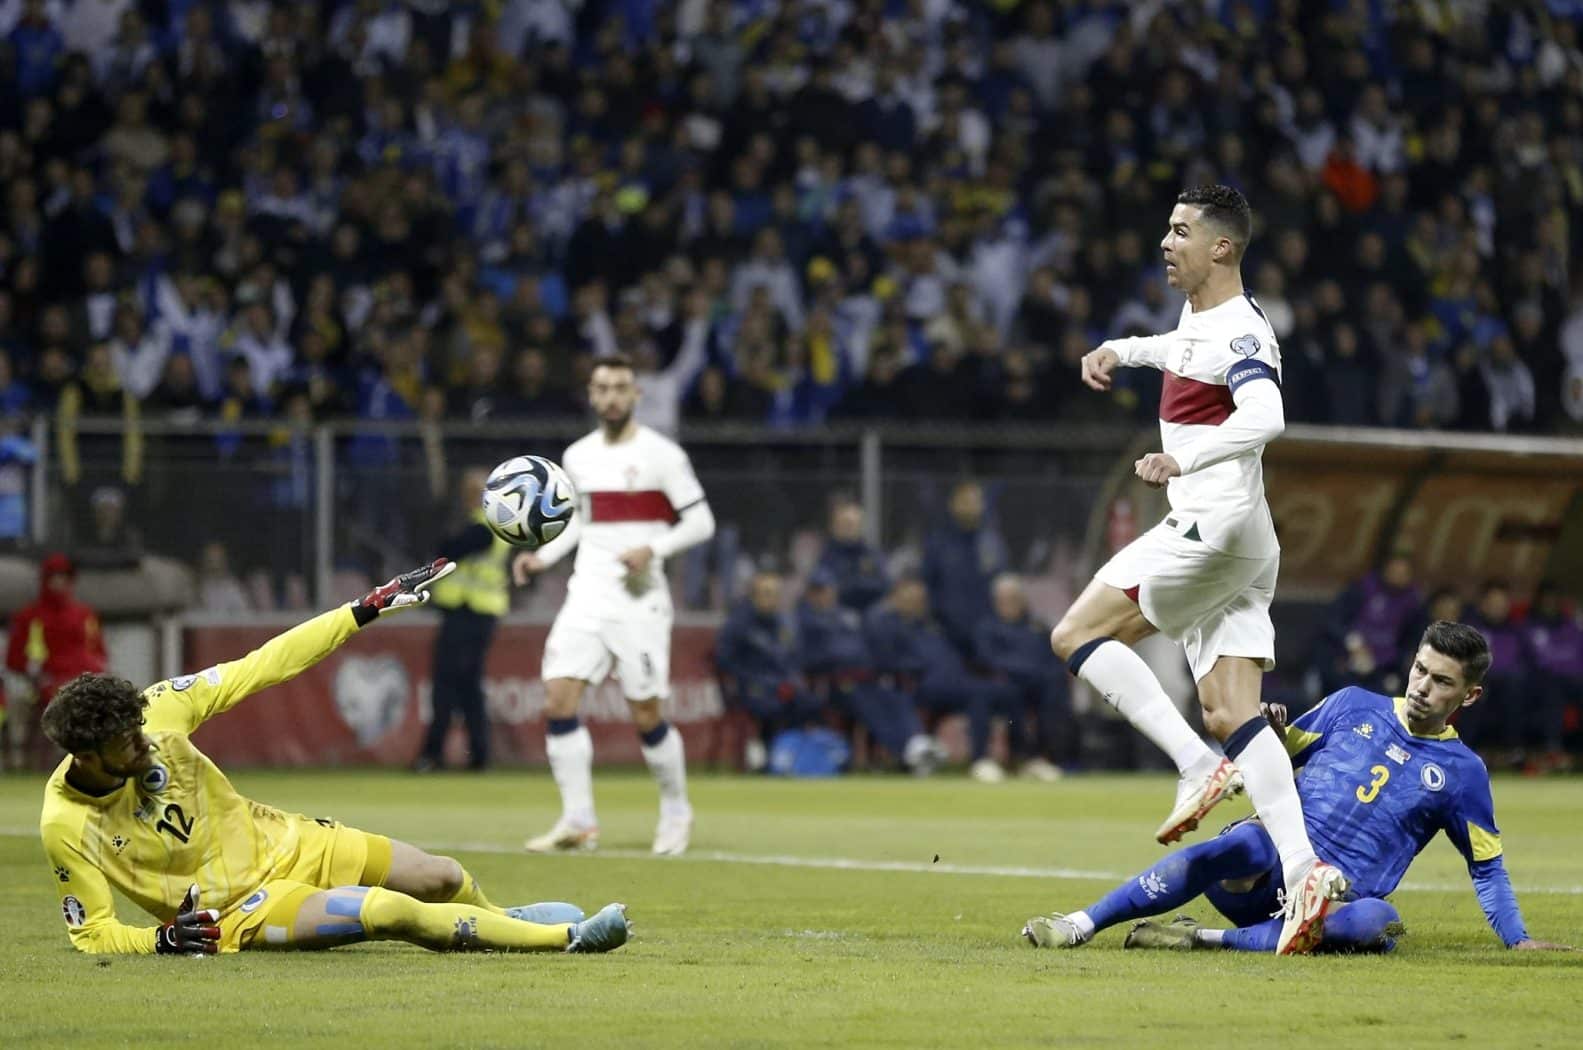 Ronaldo nâng tỷ số lên 2-0 trong trận thắng Bosnia 5-0 ngày 17/10. Ảnh: EPA